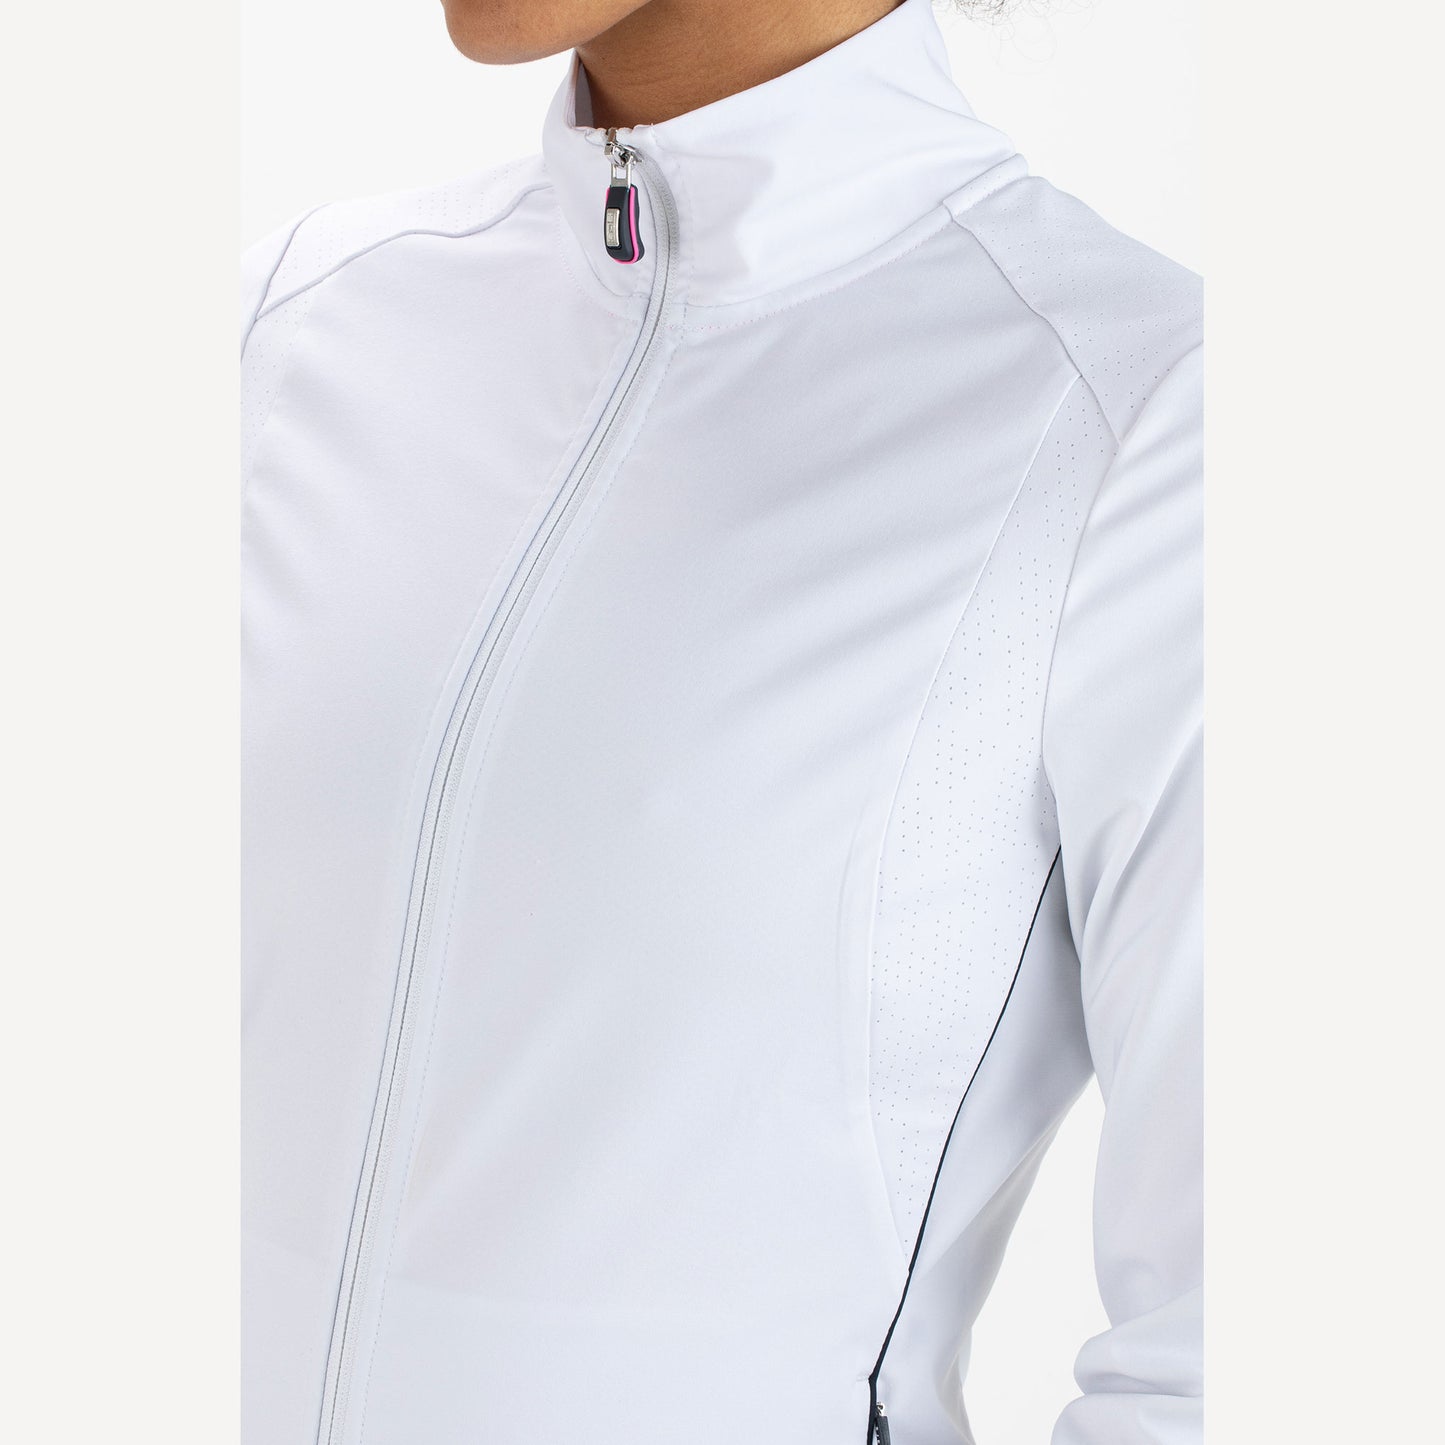 Sjeng Sports Annelyn Women's Woven Tennis Jacket White (3)